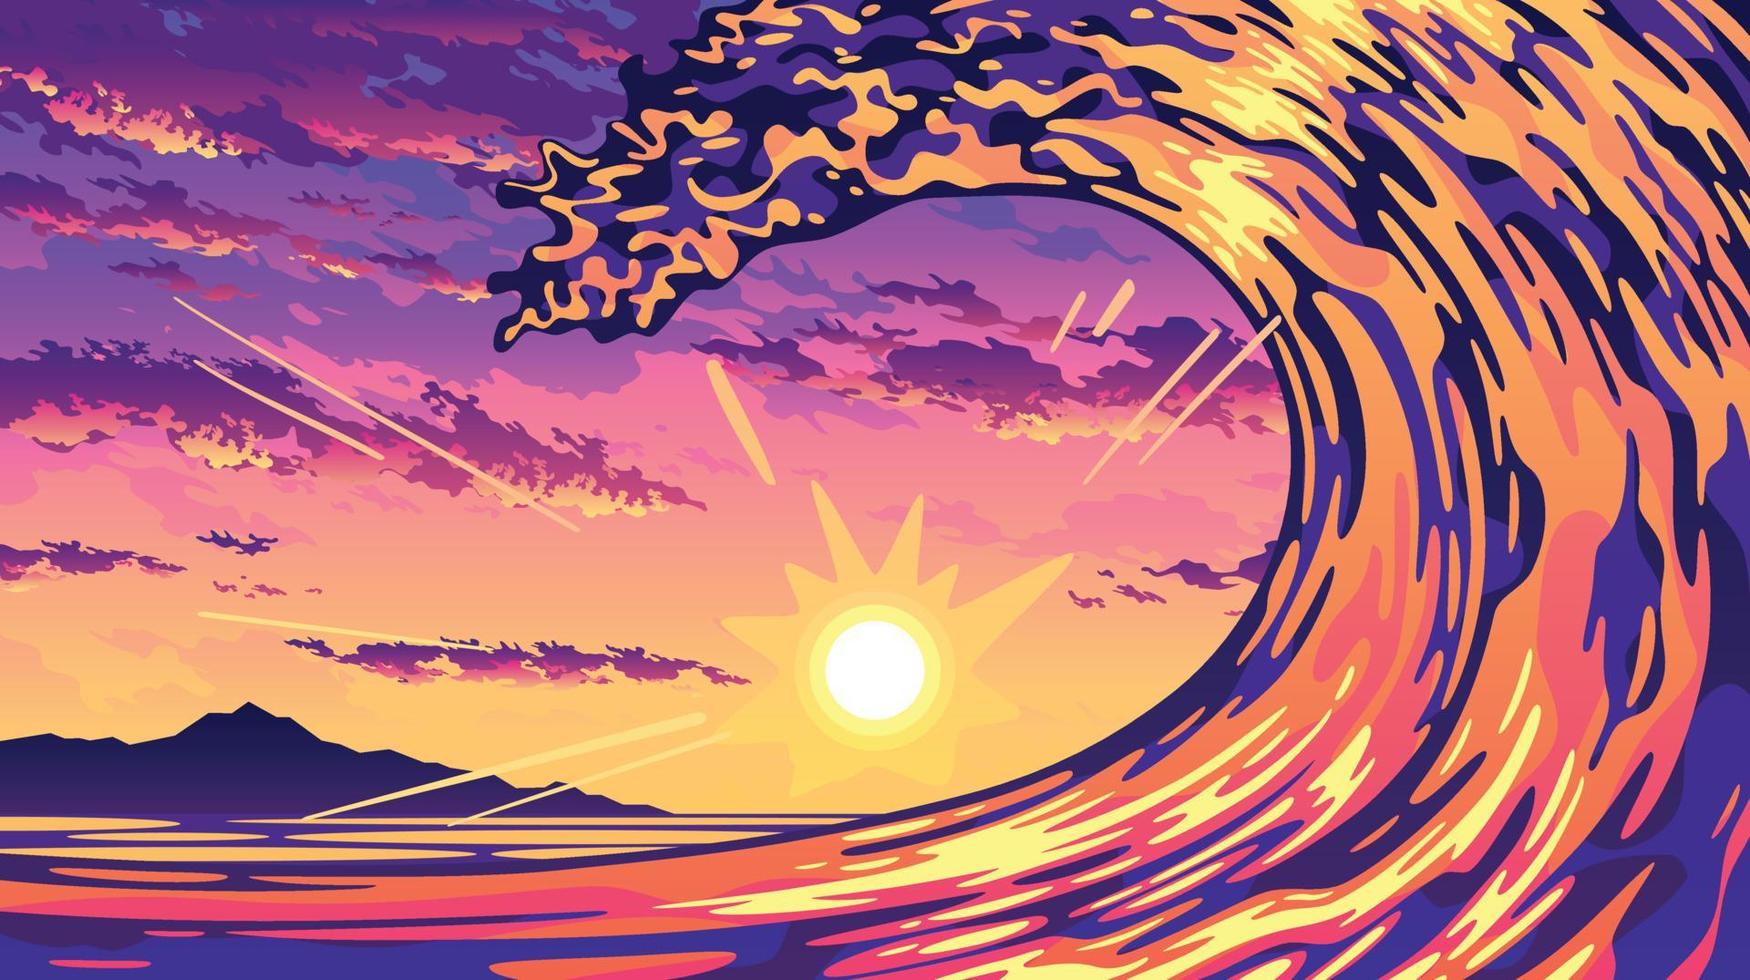 puesta de sol océano olas paisaje ilustración vector